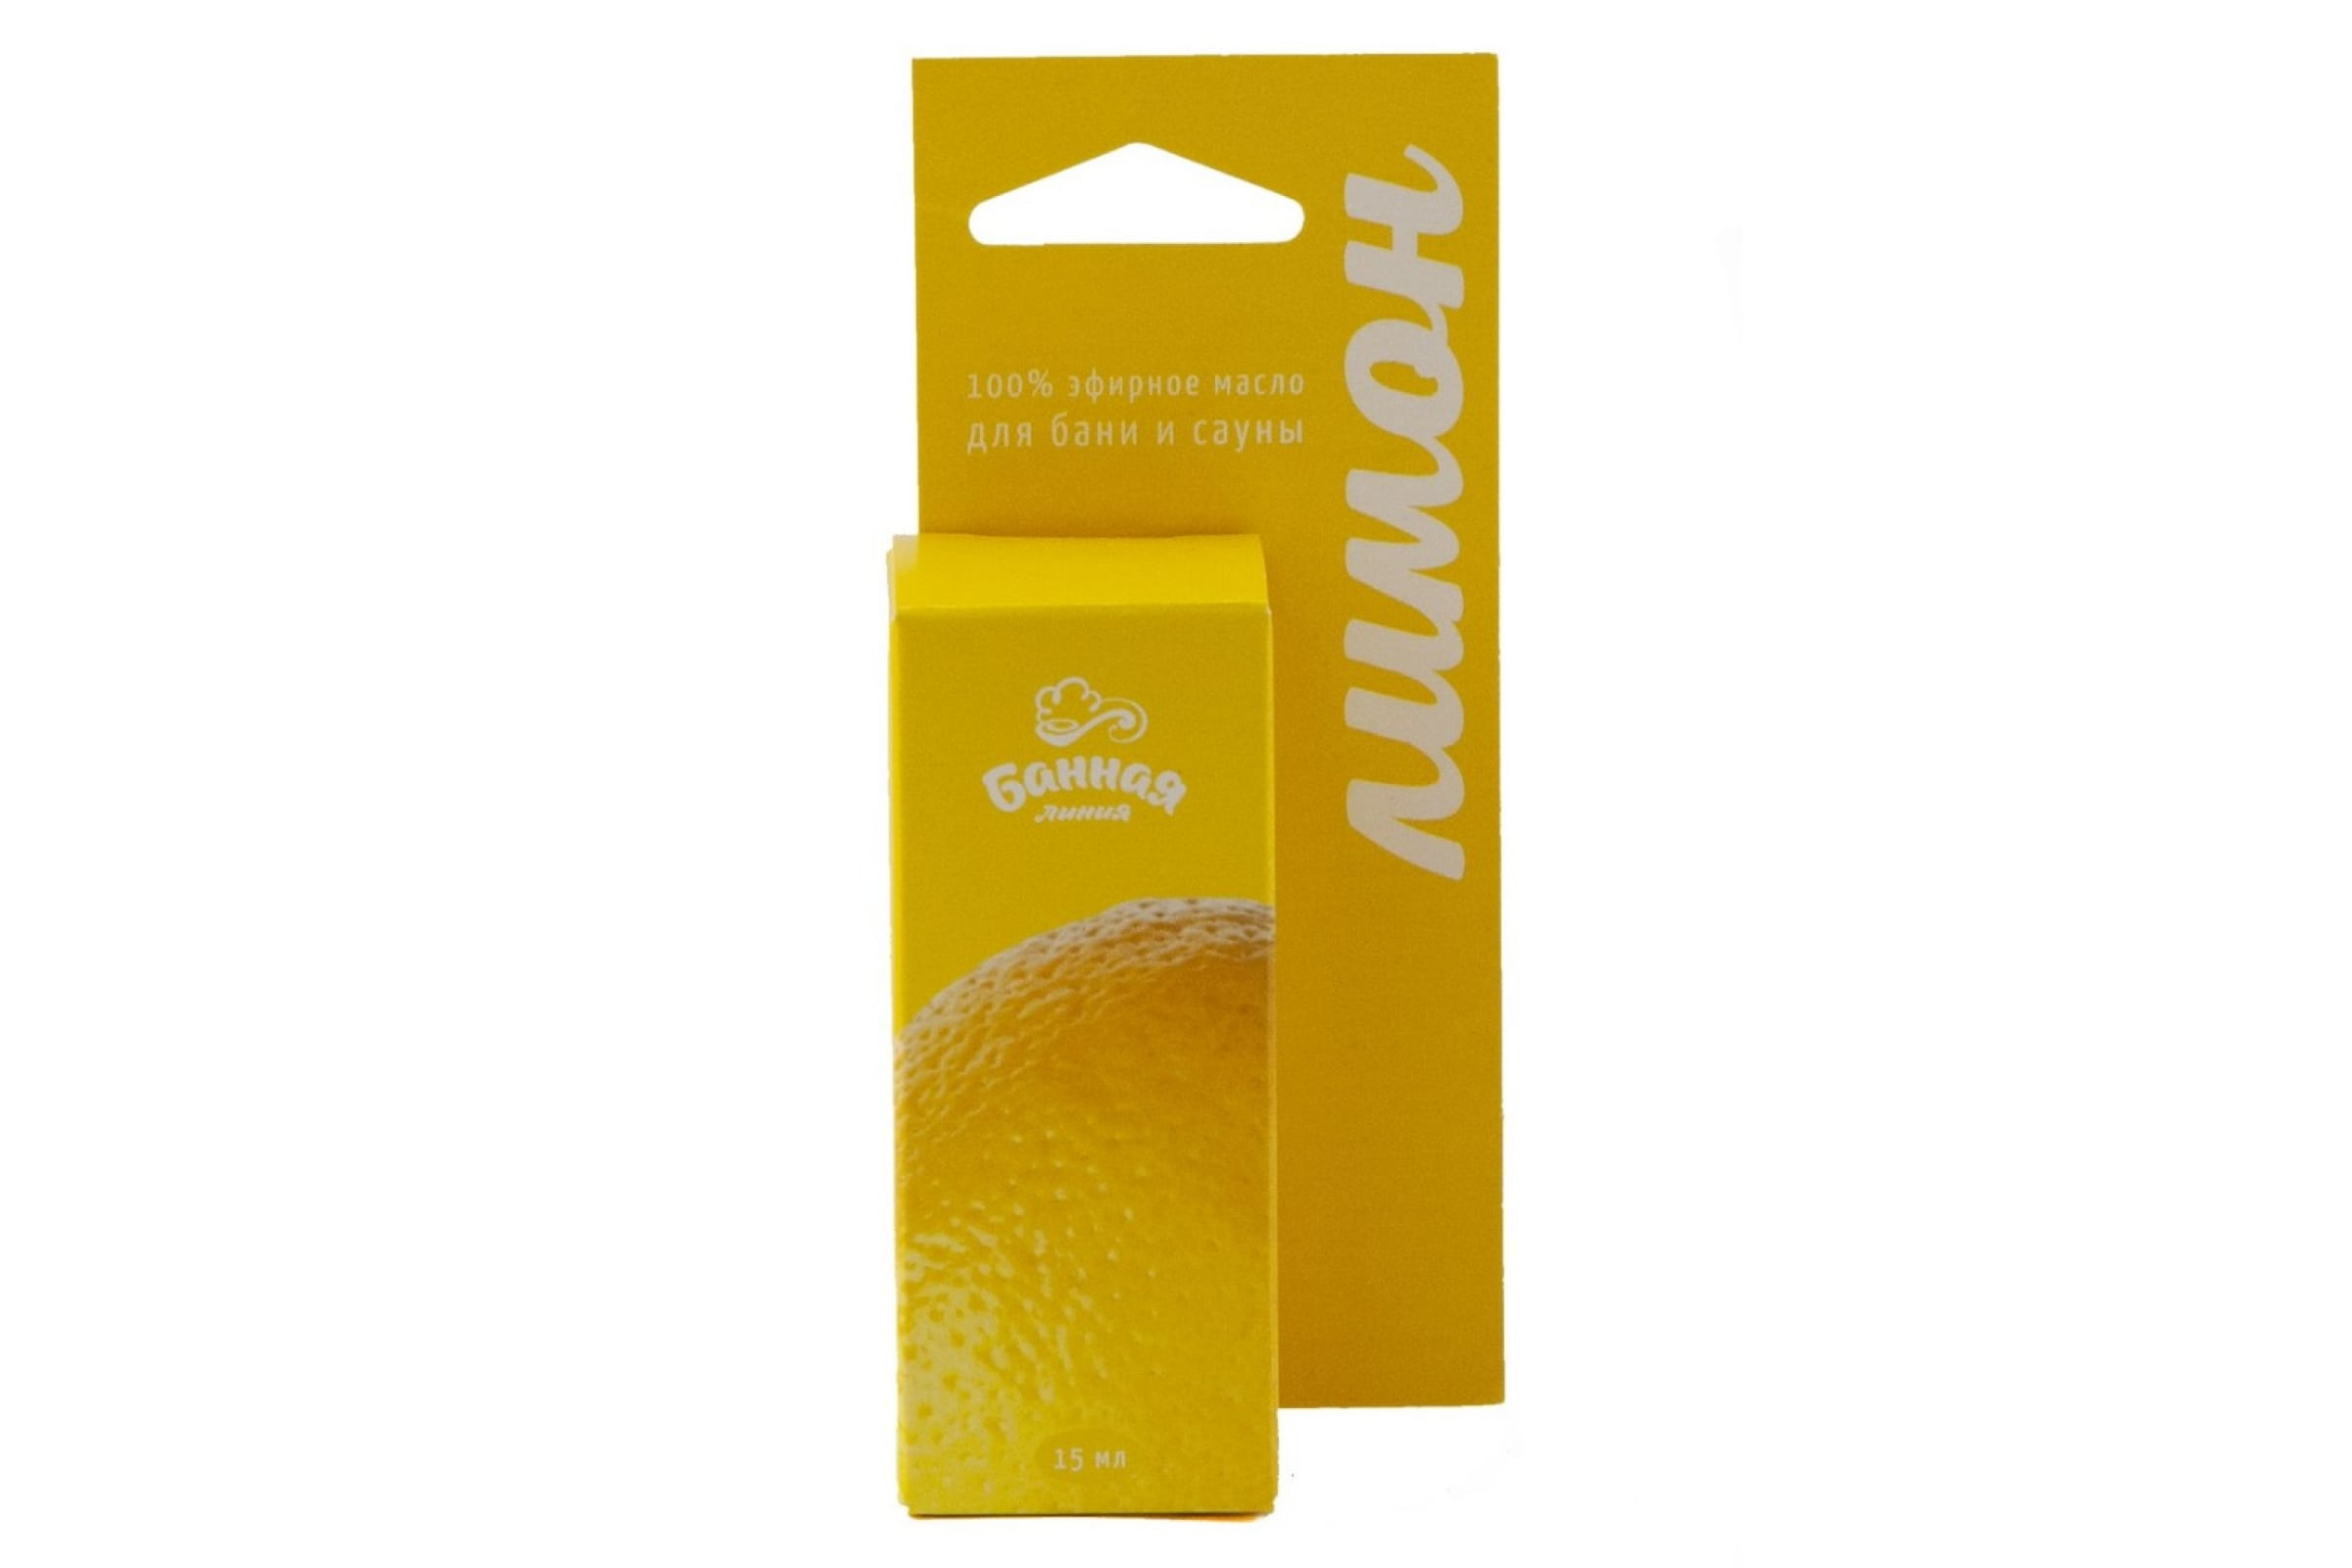 Масло эфирное Лимон 15мл Банная линия /11-490/30010